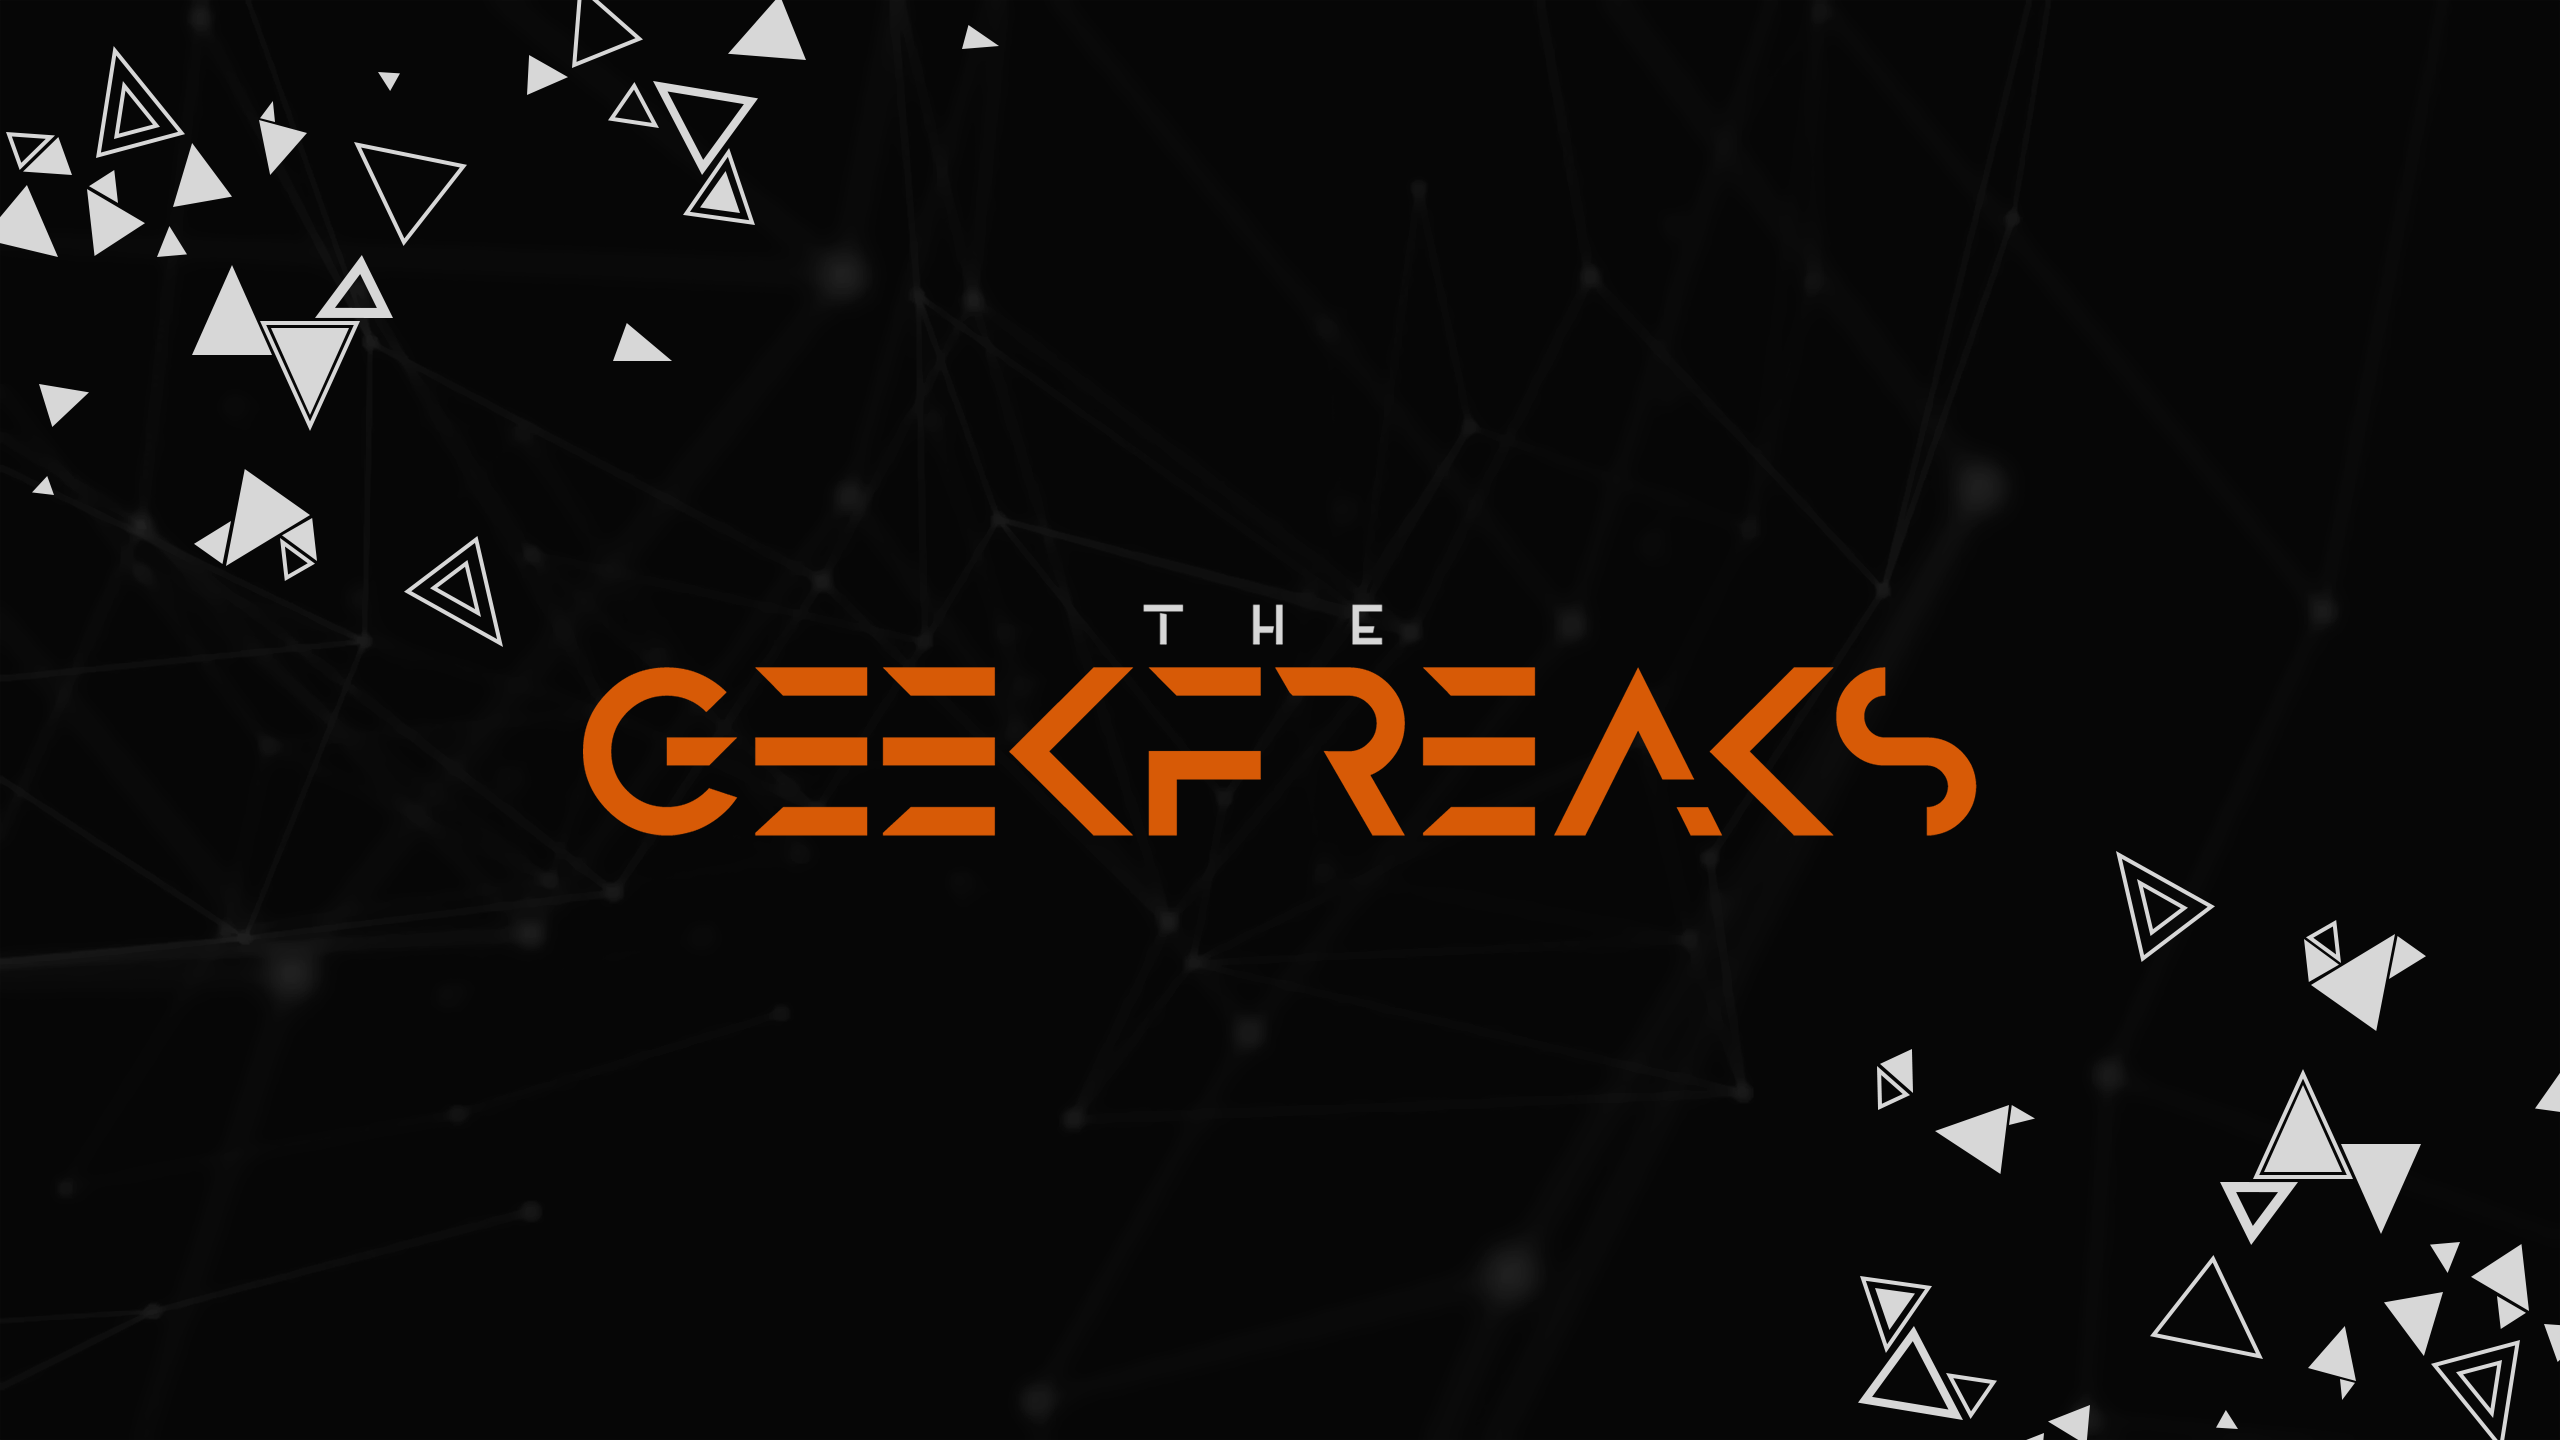 TheGeekFreaks